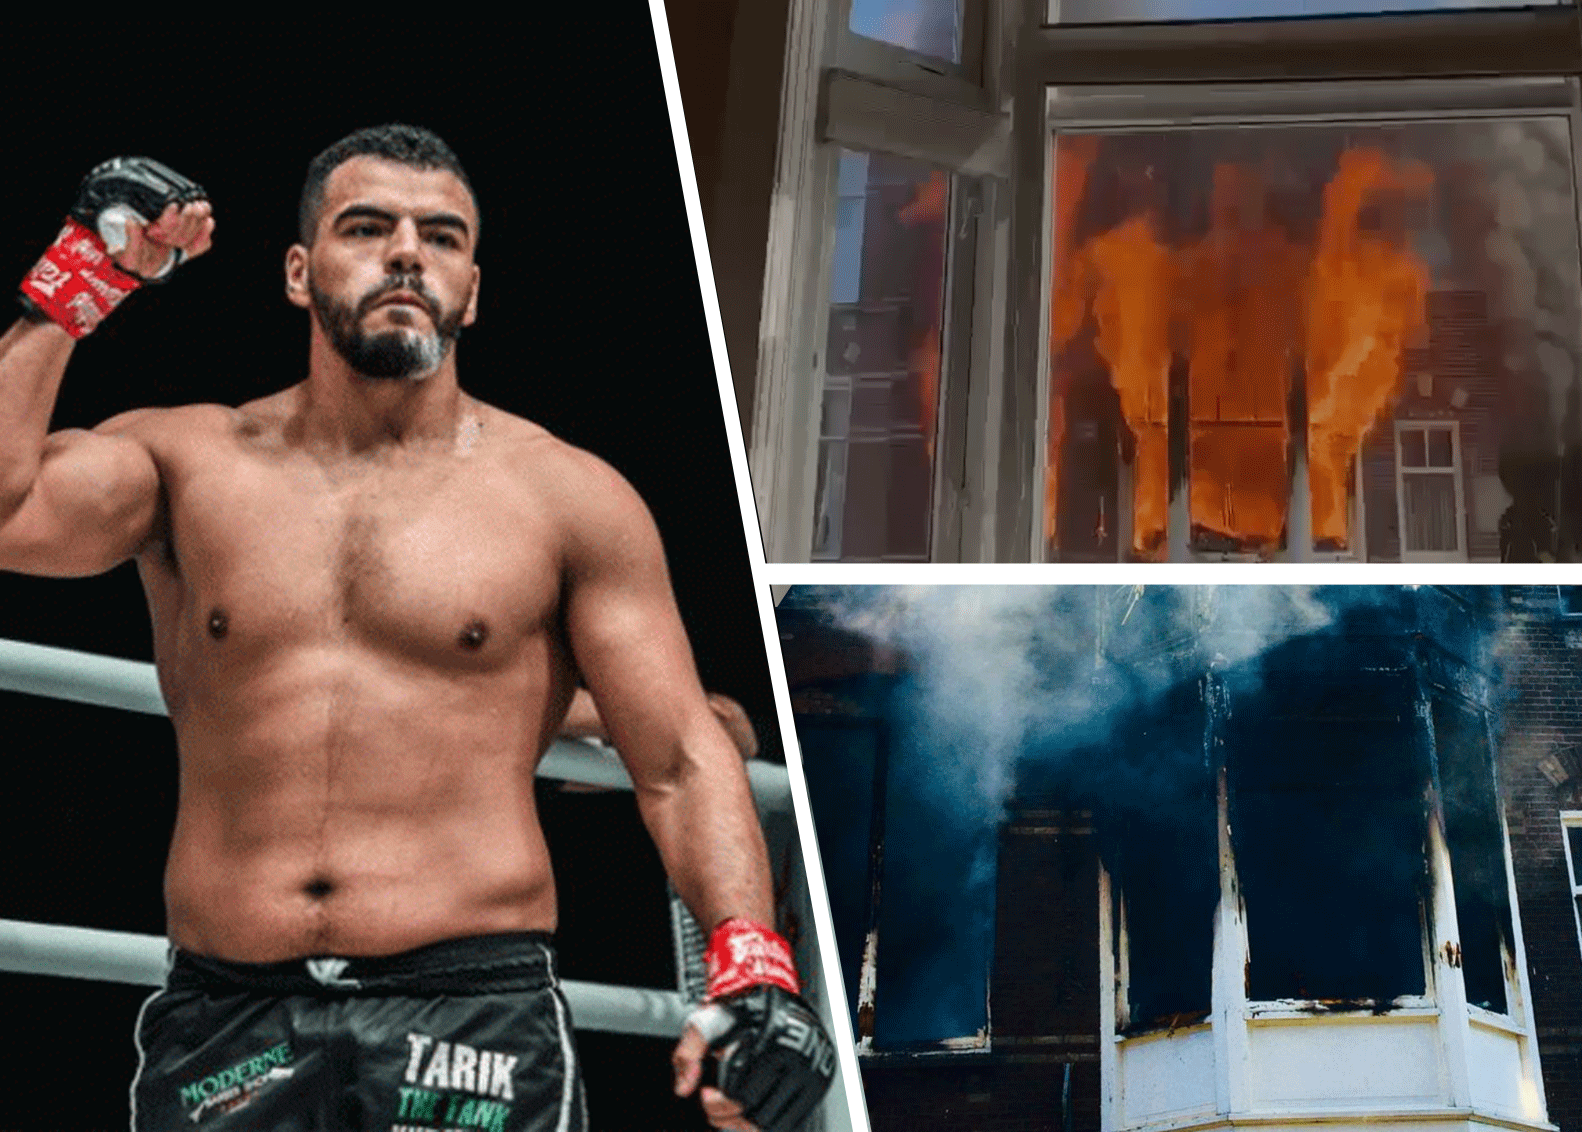 GLORY Kickbokser Tarik Khbabez in actie bij grote brand (video)